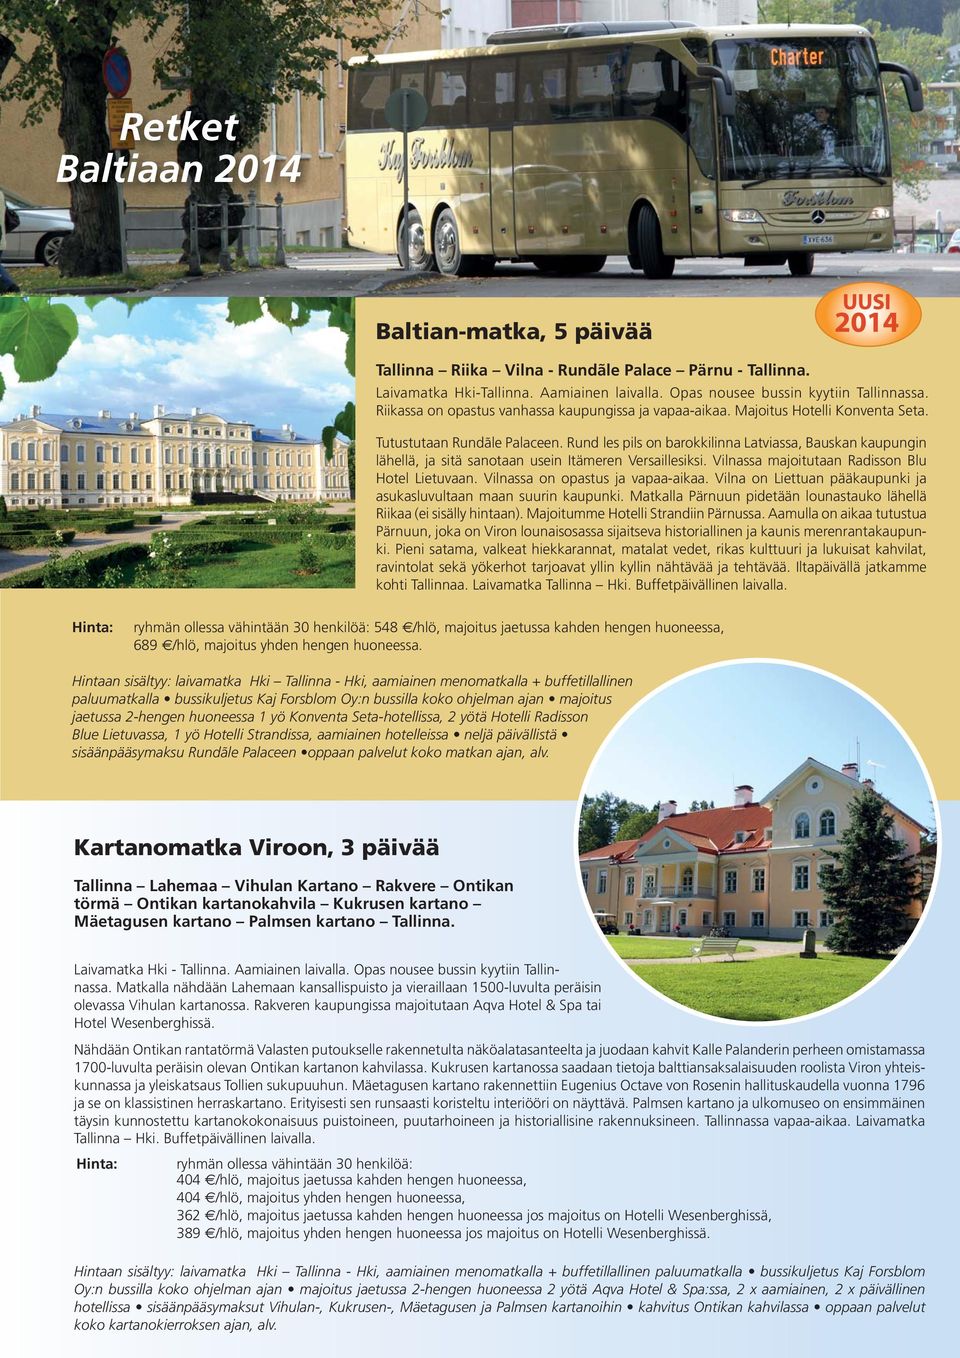 Rund les pils on barokkilinna Latviassa, Bauskan kaupungin lähellä, ja sitä sanotaan usein Itämeren Versaillesiksi. Vilnassa majoitutaan Radisson Blu Hotel Lietuvaan.